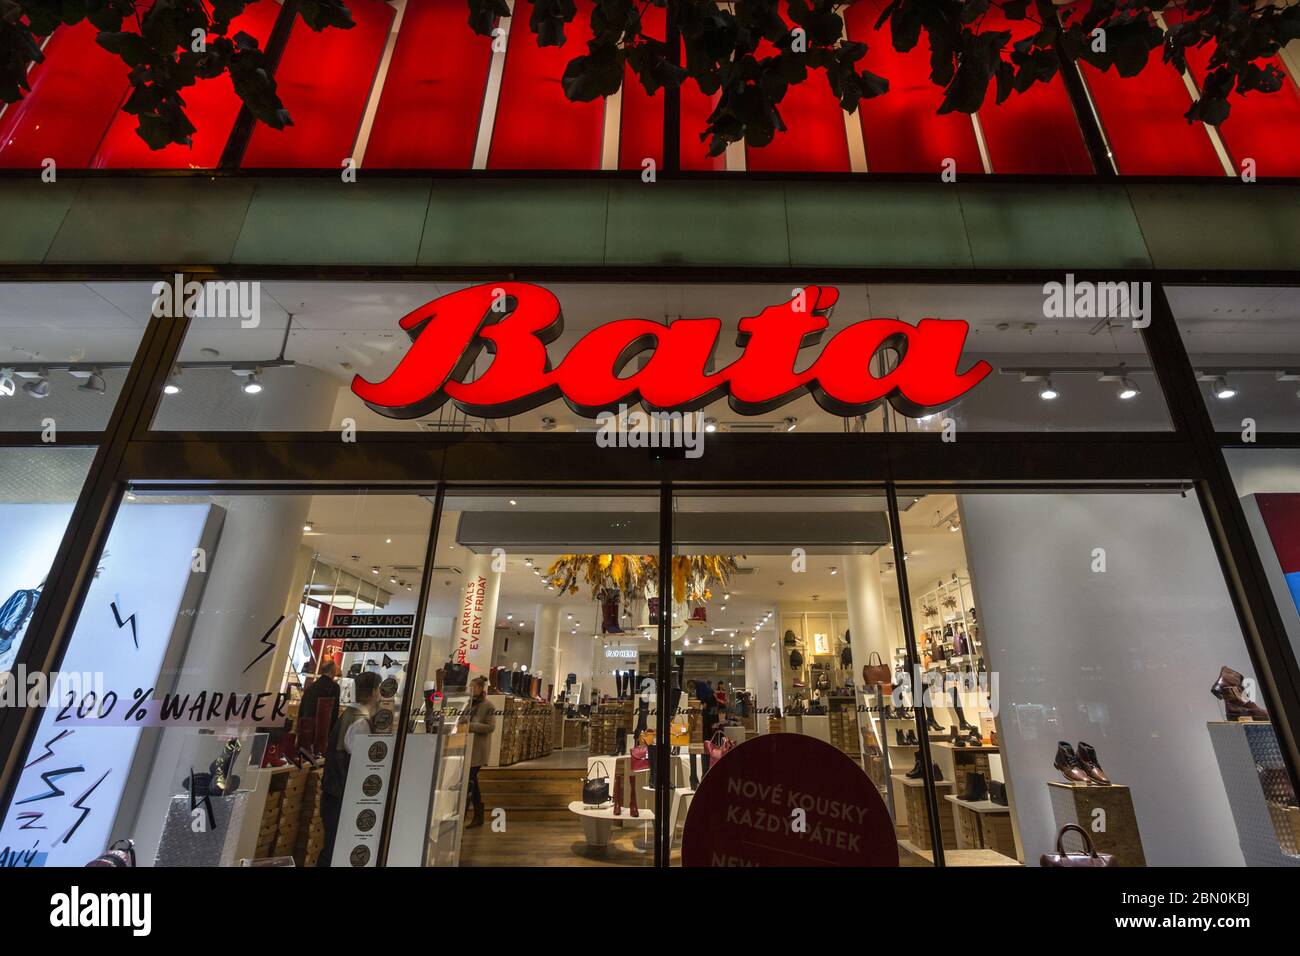 PRAGA, CZECHIA - 31 OTTOBRE 2019: Le scarpe Bata firmano davanti al loro negozio locale a Praga. Bata è un produttore e rivenditore di calzature e calzature per la produzione di calzature Foto Stock